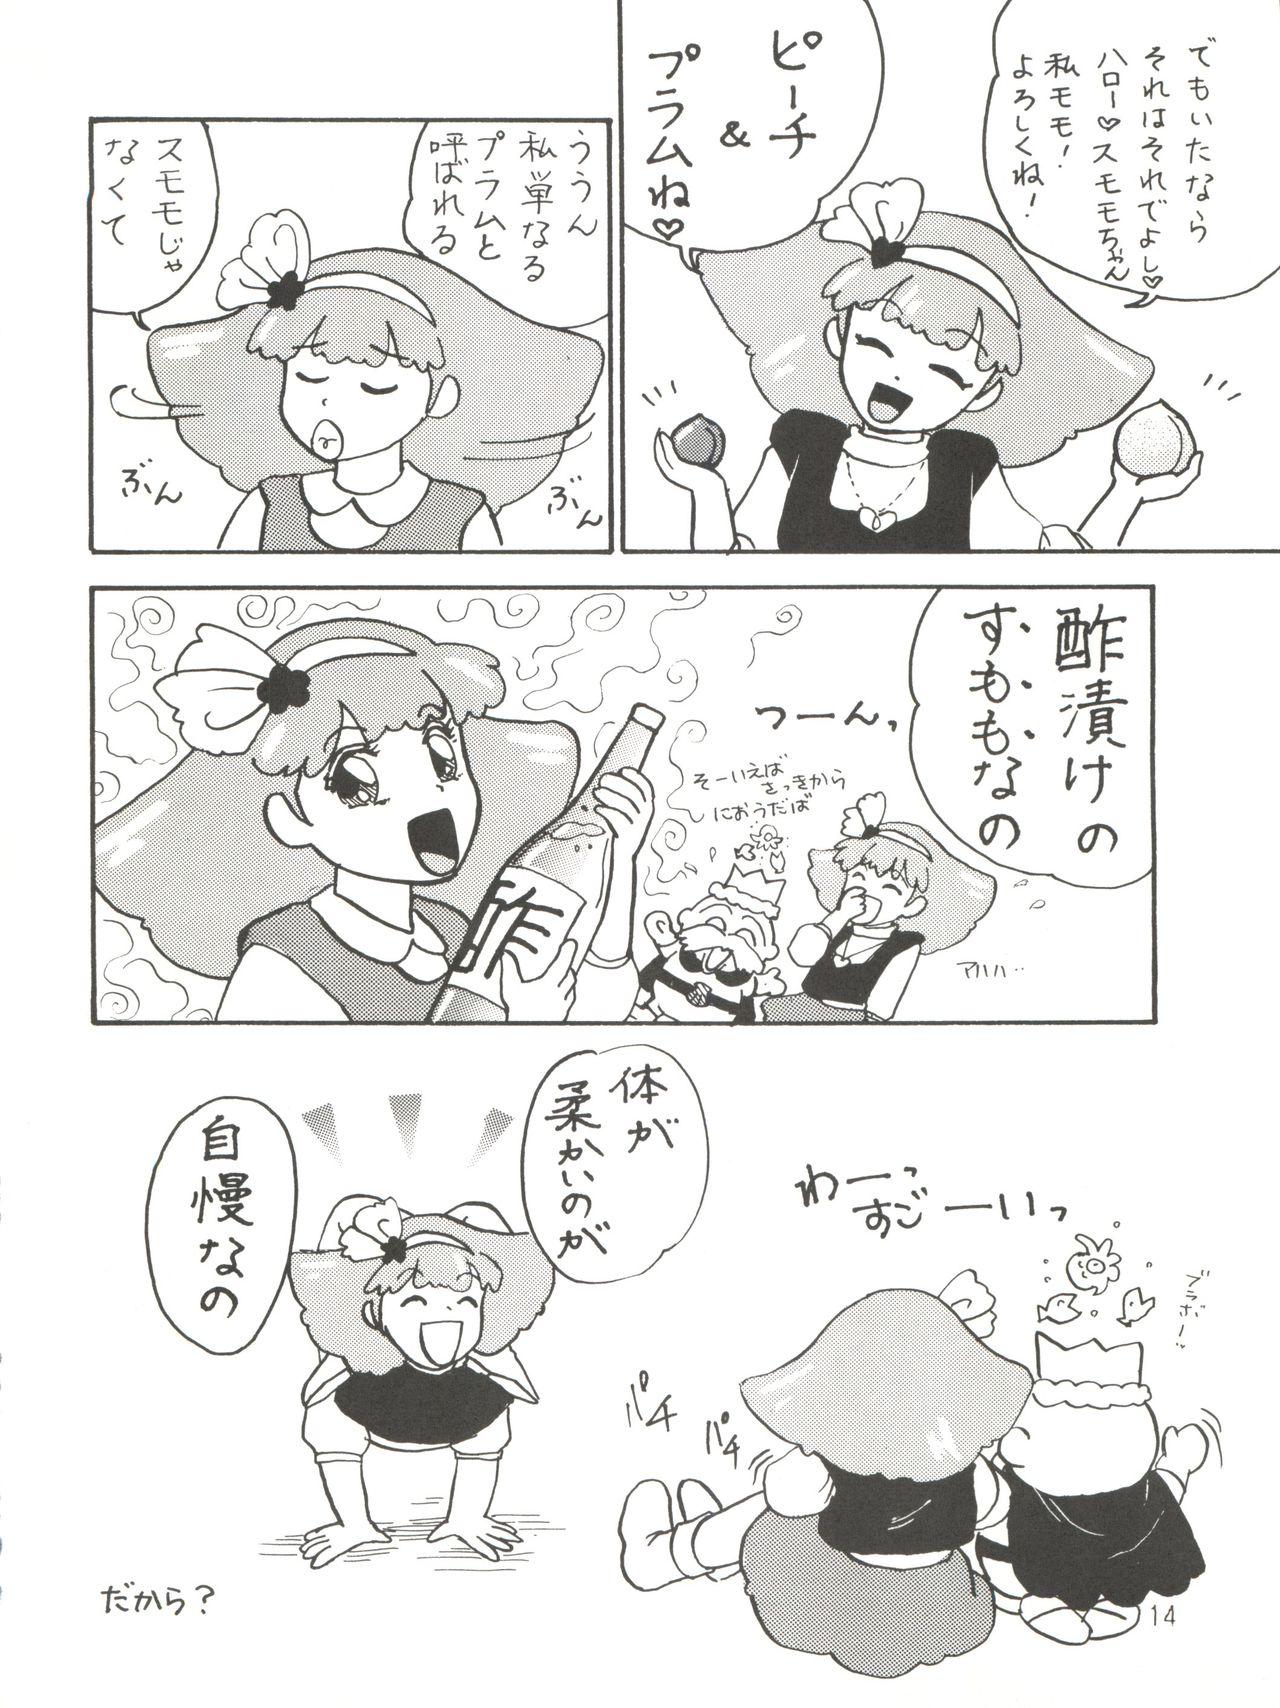 [紫電会 (お梅) MOMO POWER (Mahou no Princess Minky Momo) 13